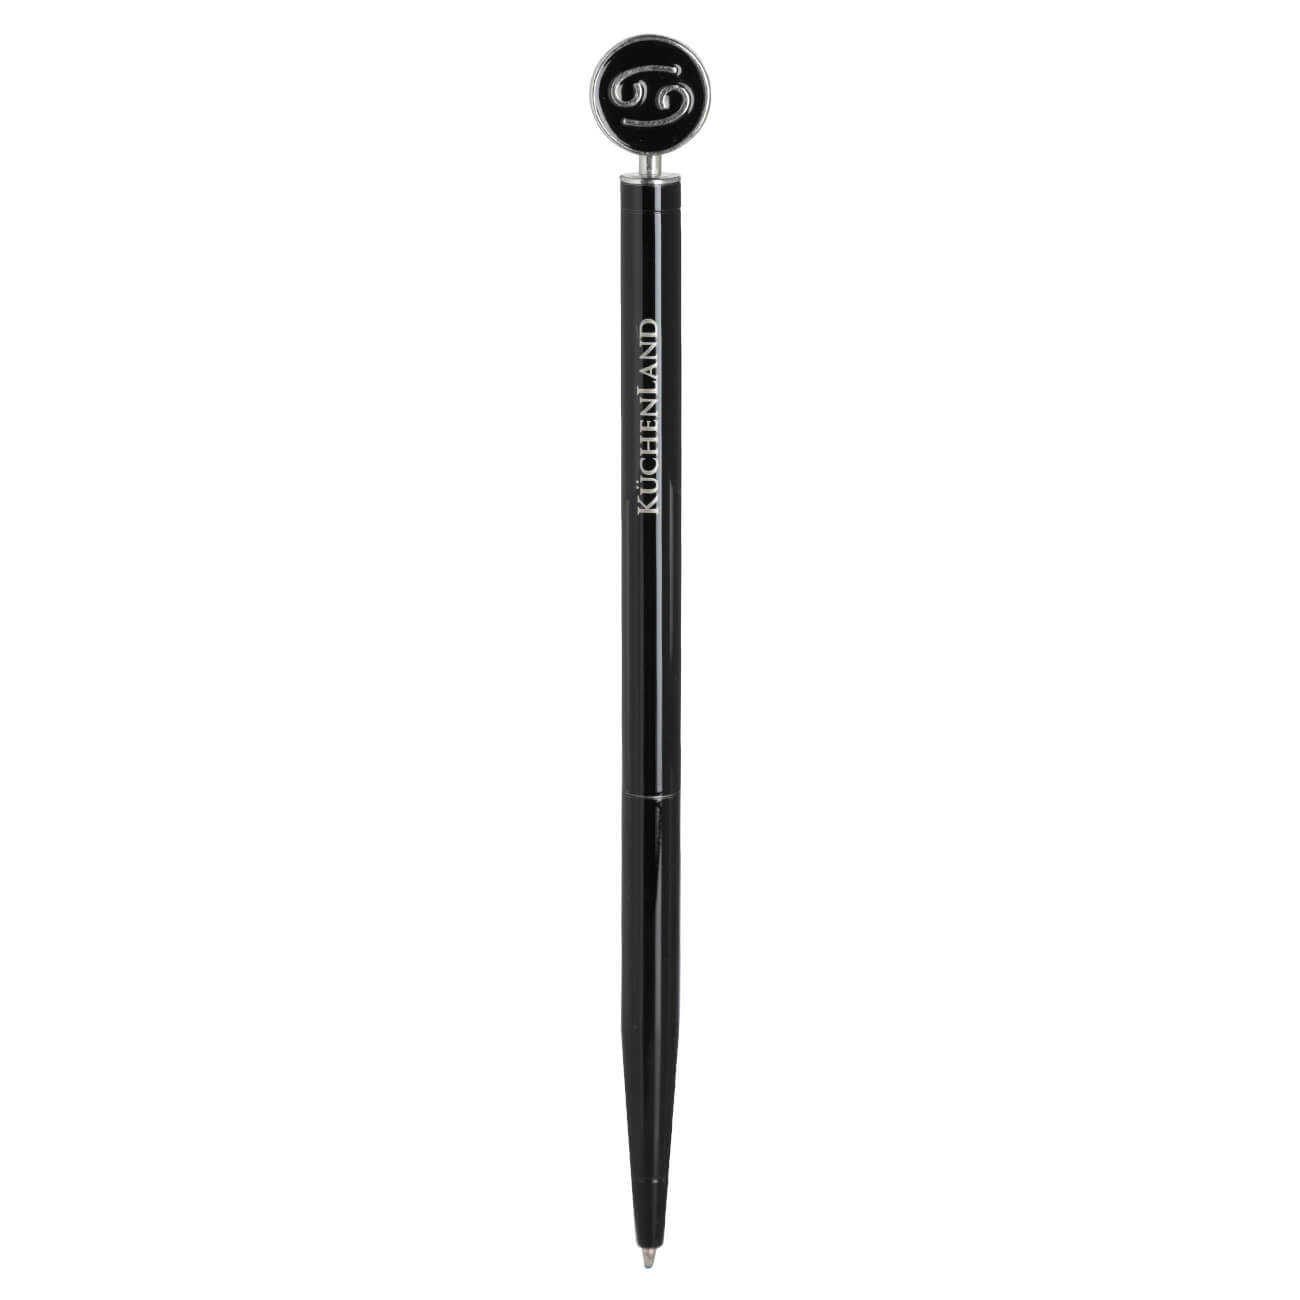 Ручка шариковая, 15 см, с фигуркой, сталь, черно-серебристая, Рак, Zodiac ручка подарочная шариковая в пластиковом футляре поворотная